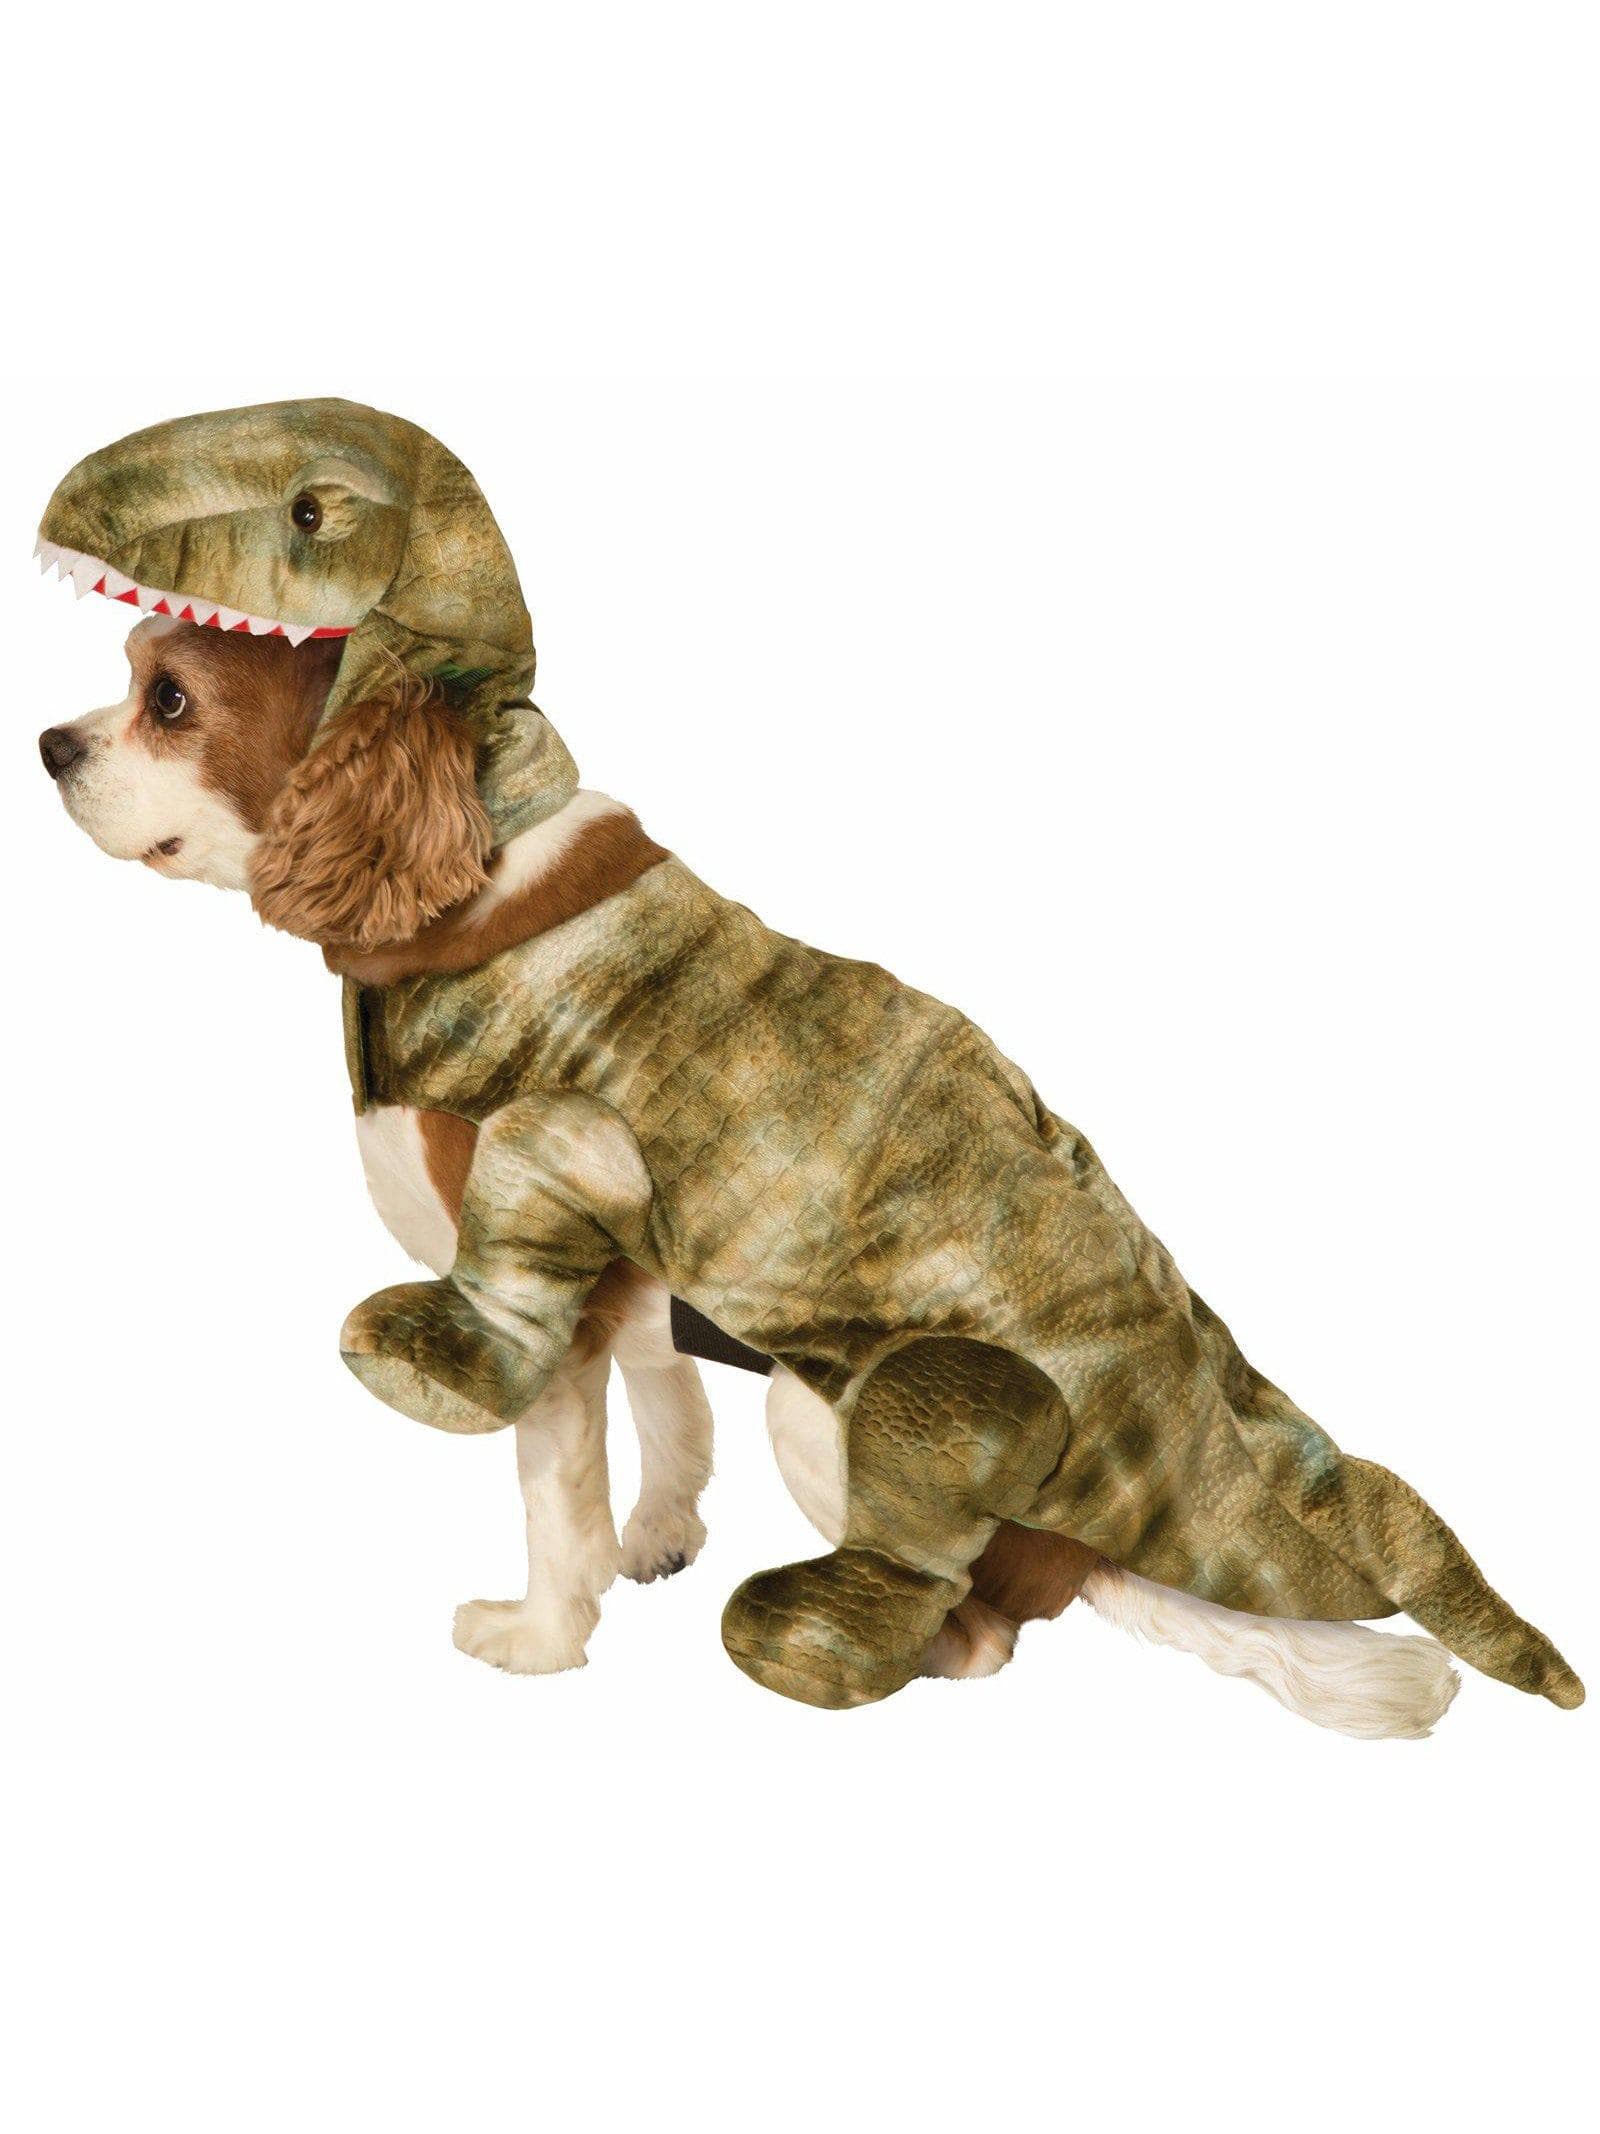 Pet's Pet Dinosaur Costume - costumes.com